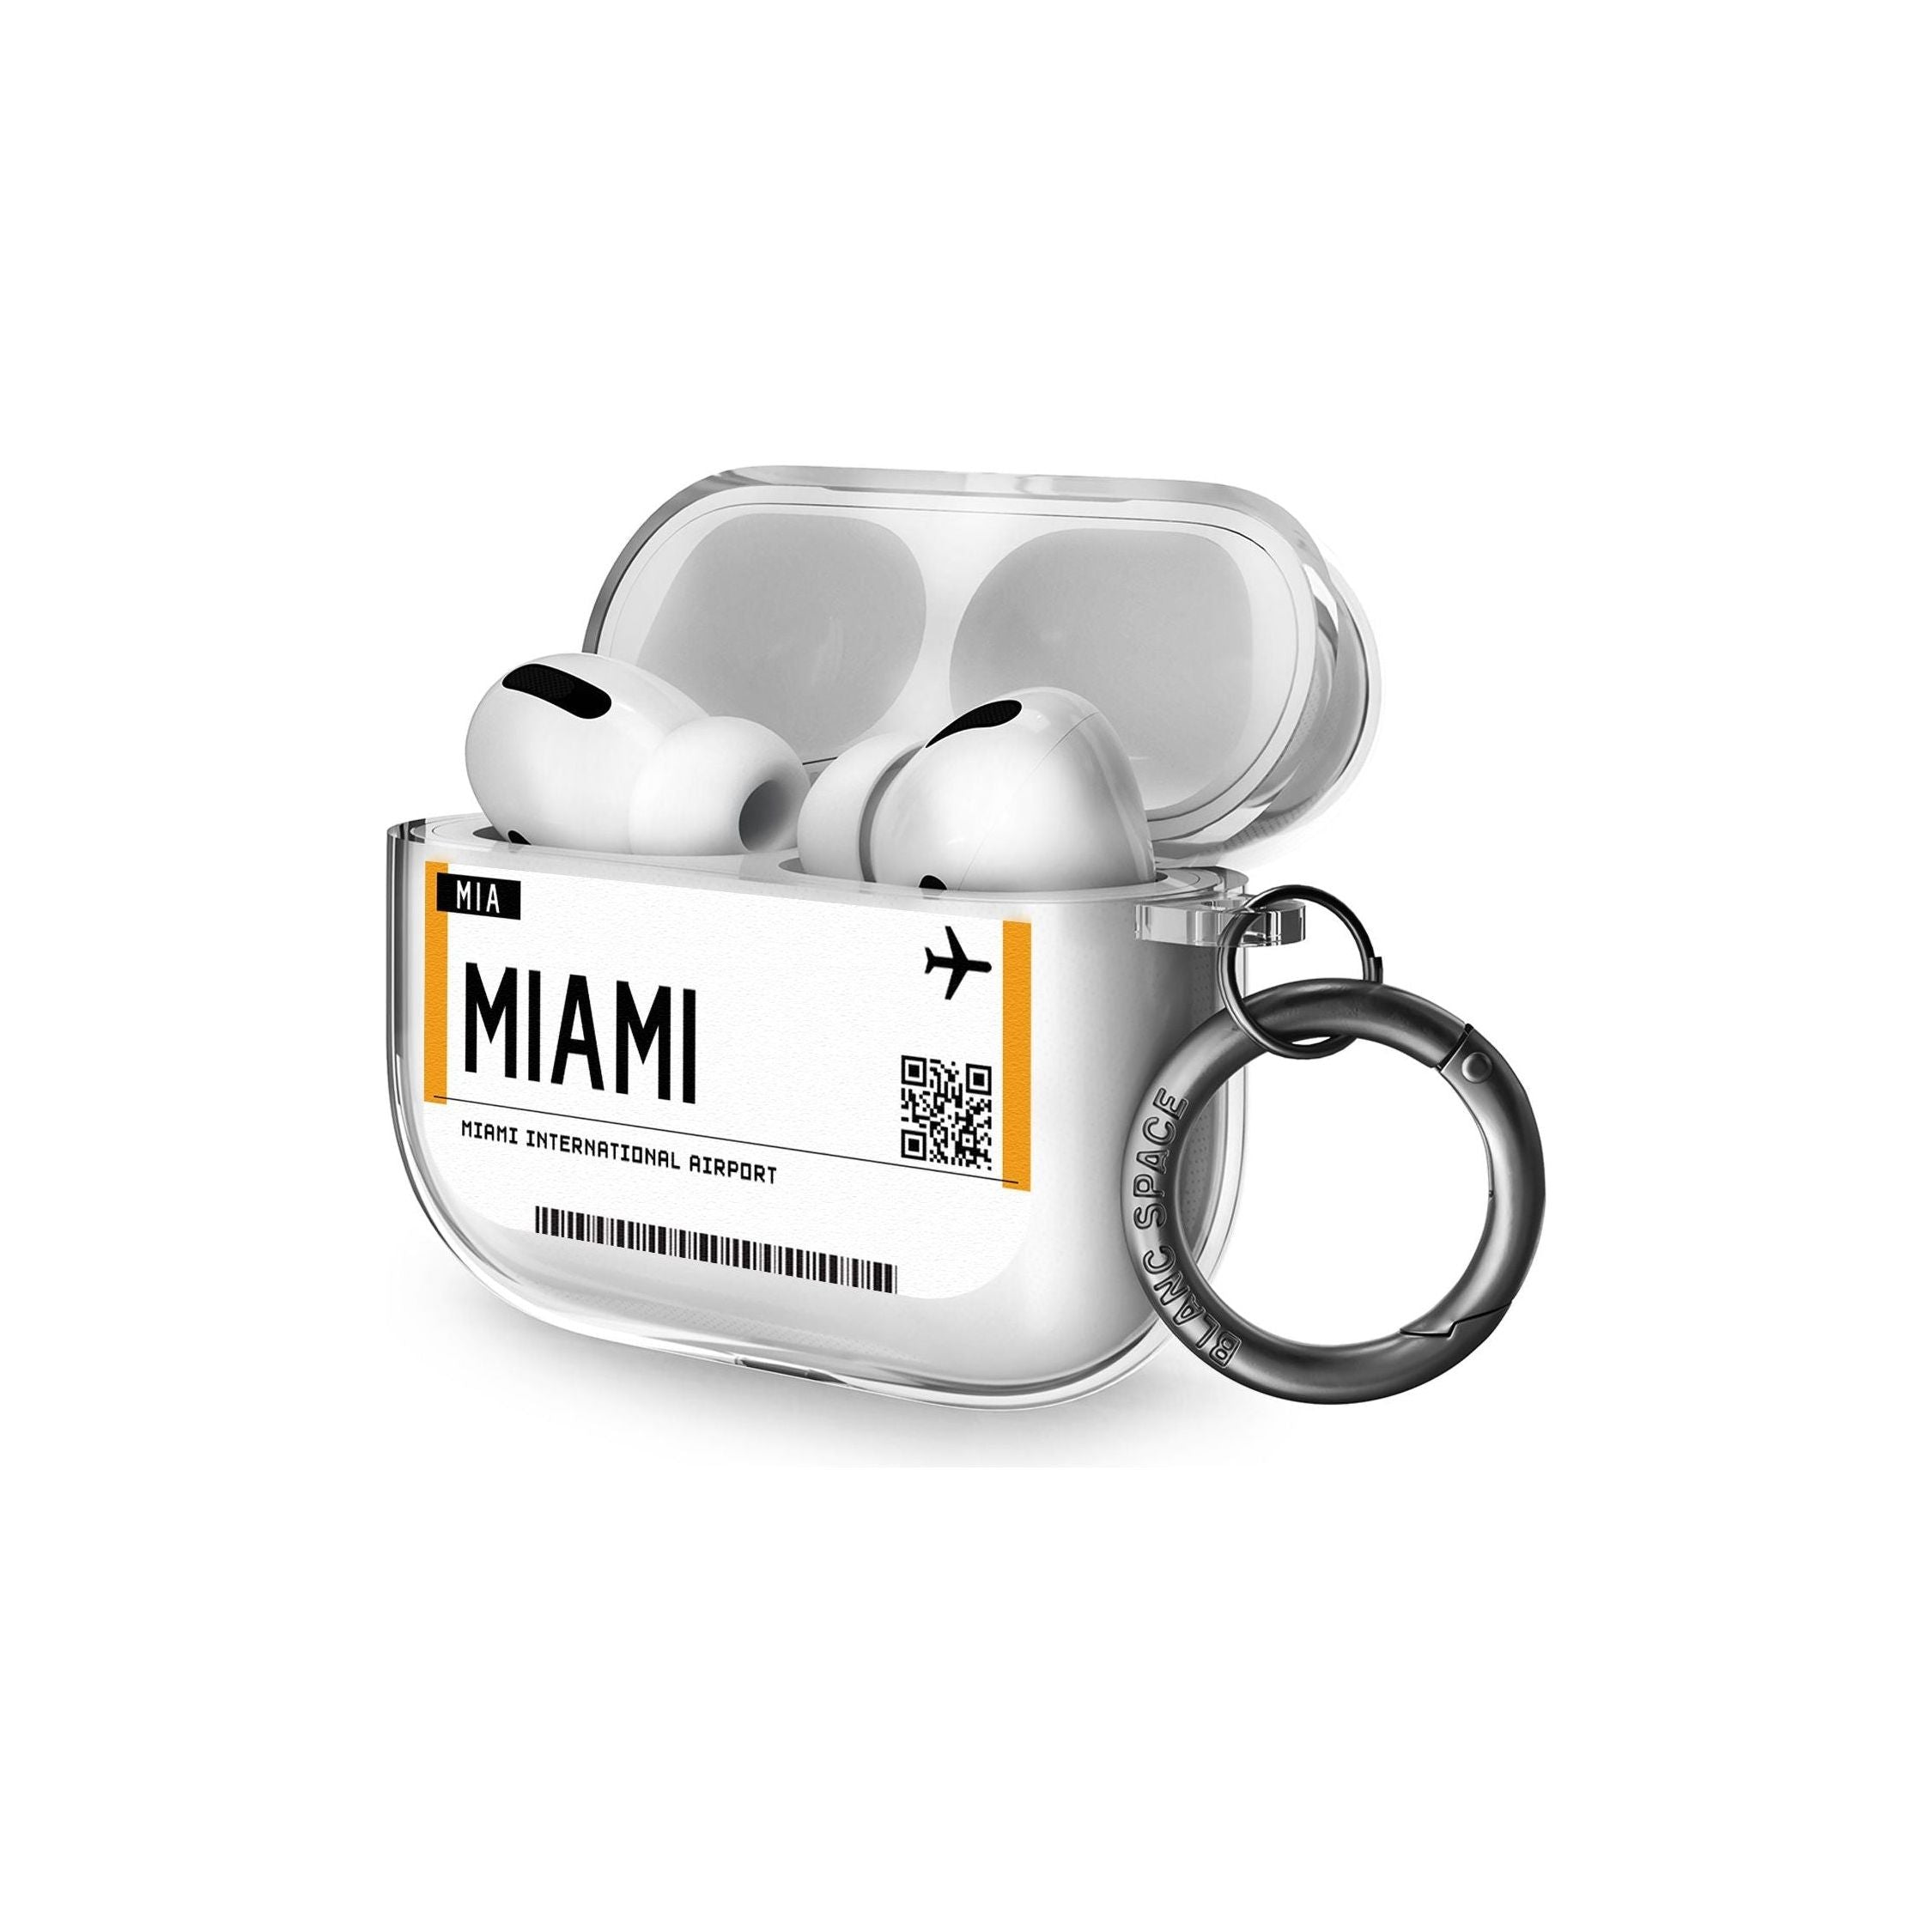 Miami Boarding Pass Airpods Pro Case